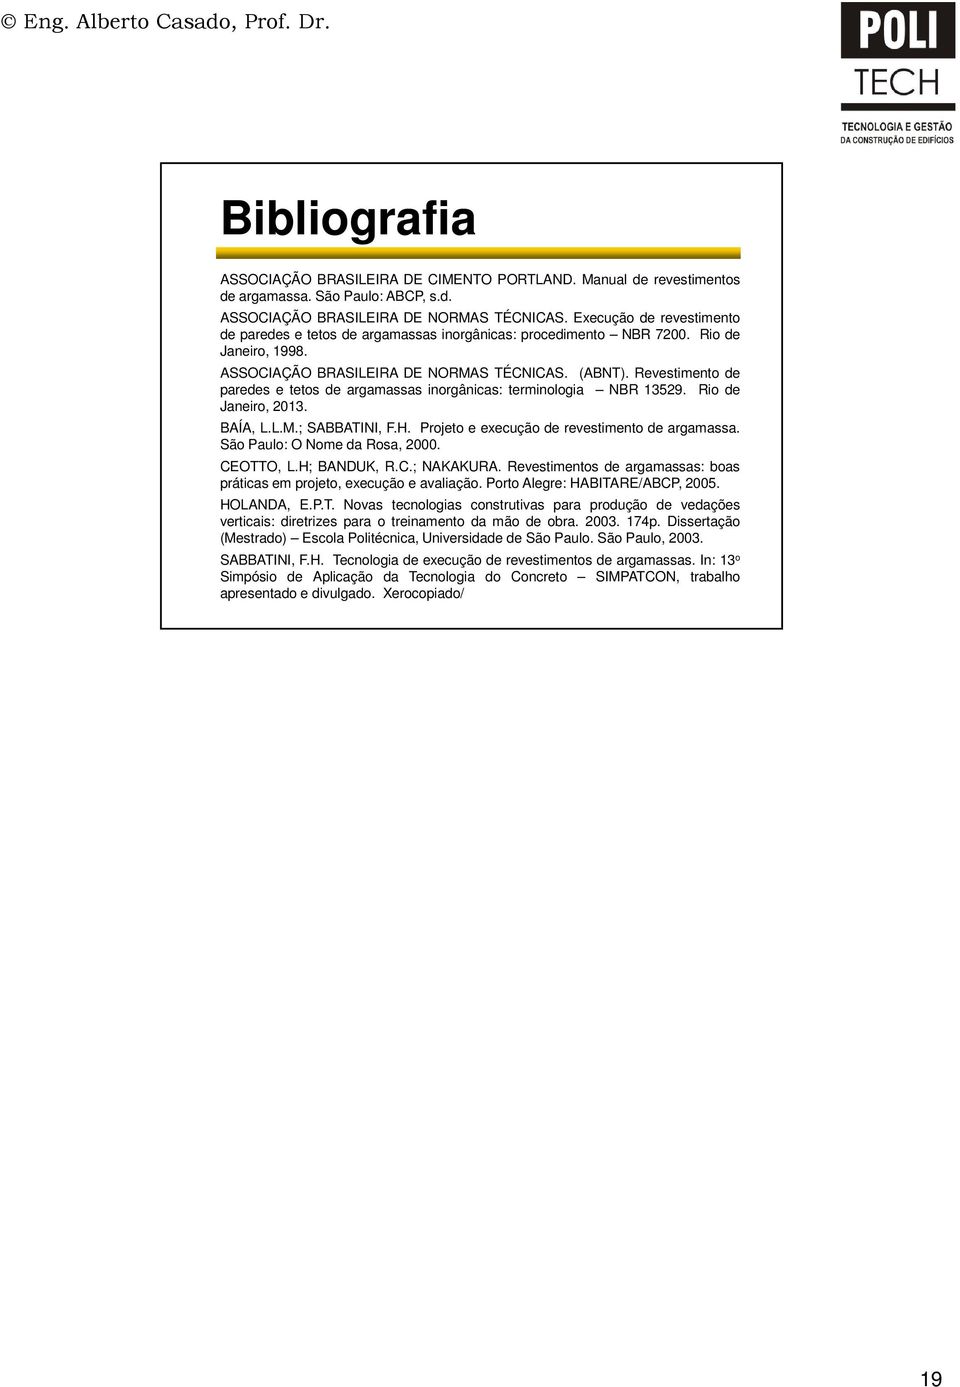 Revestimento de paredes e tetos de argamassas inorgânicas: terminologia NBR 1529. Rio de Janeiro, 201. BÍ, L.L.M.; SBBTINI, F.H. Projeto e execução de revestimento de argamassa.